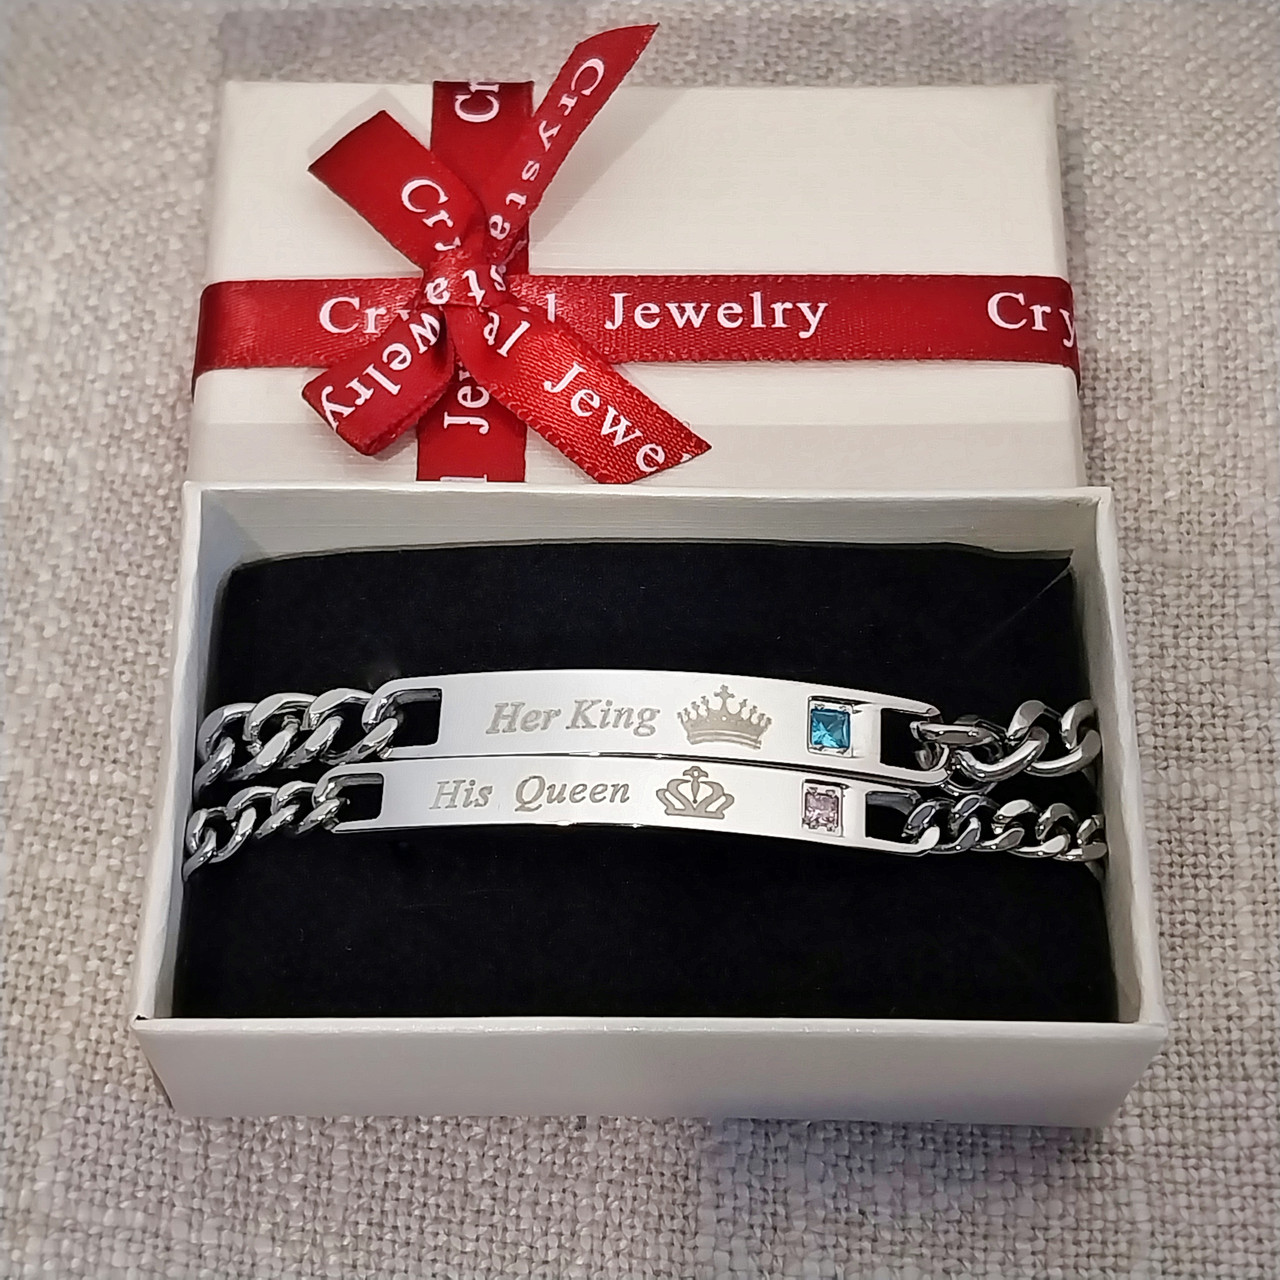 Подарунок закоханим - парні браслети з гравіюванням "Її Король Його Королева" ювелірна сталь у коробочці